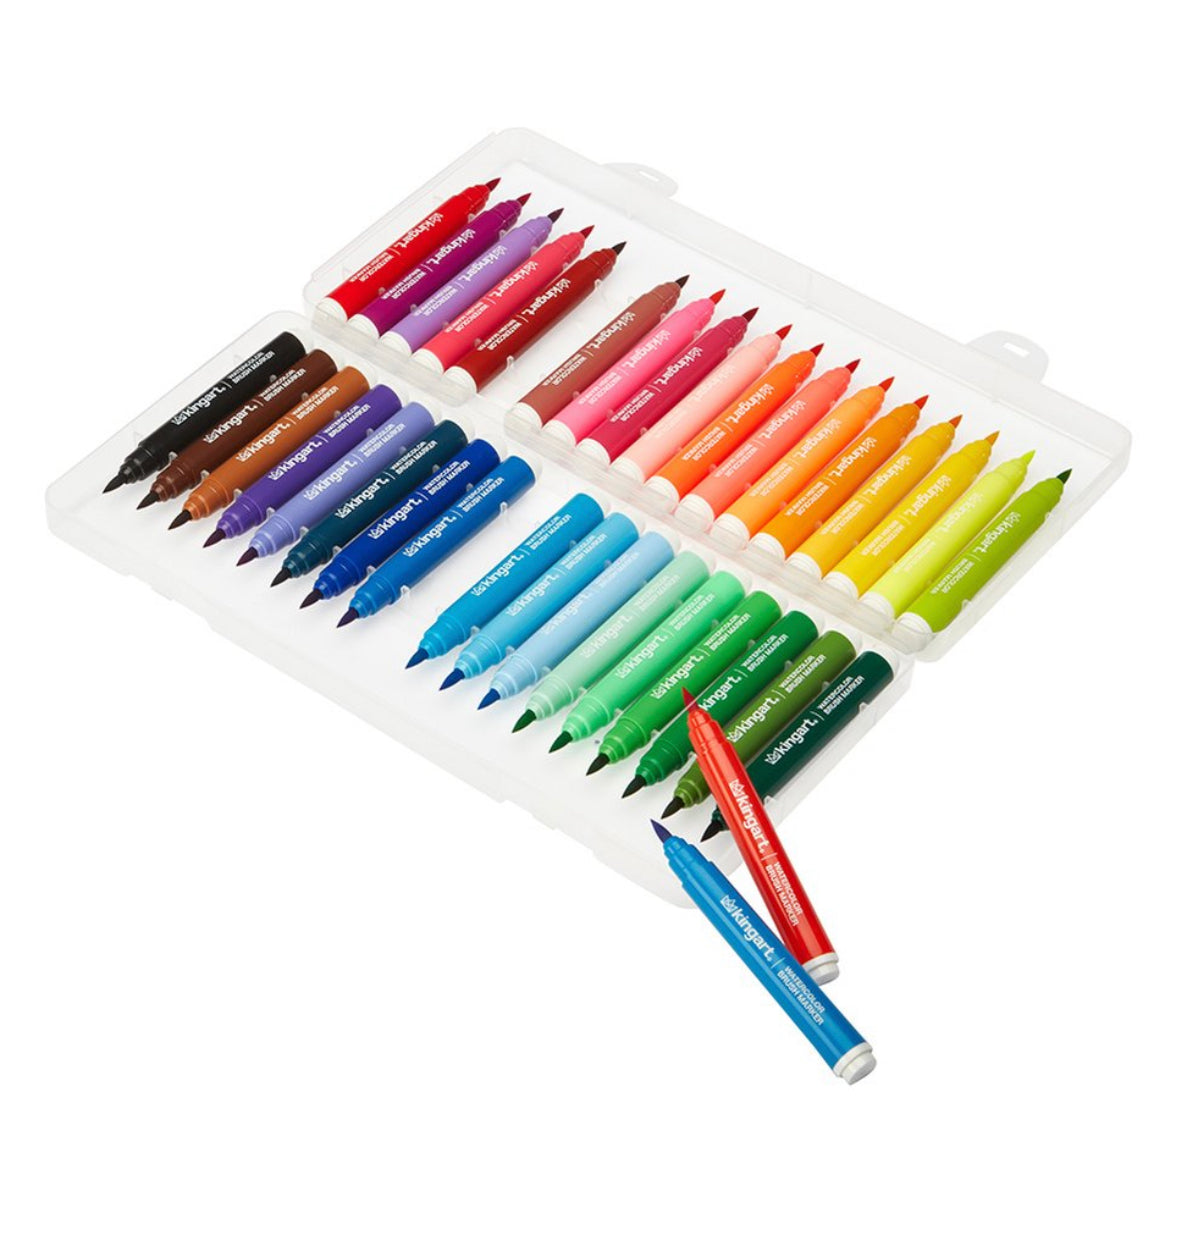 Kingart Watercolor Brush Markers - Set of 36